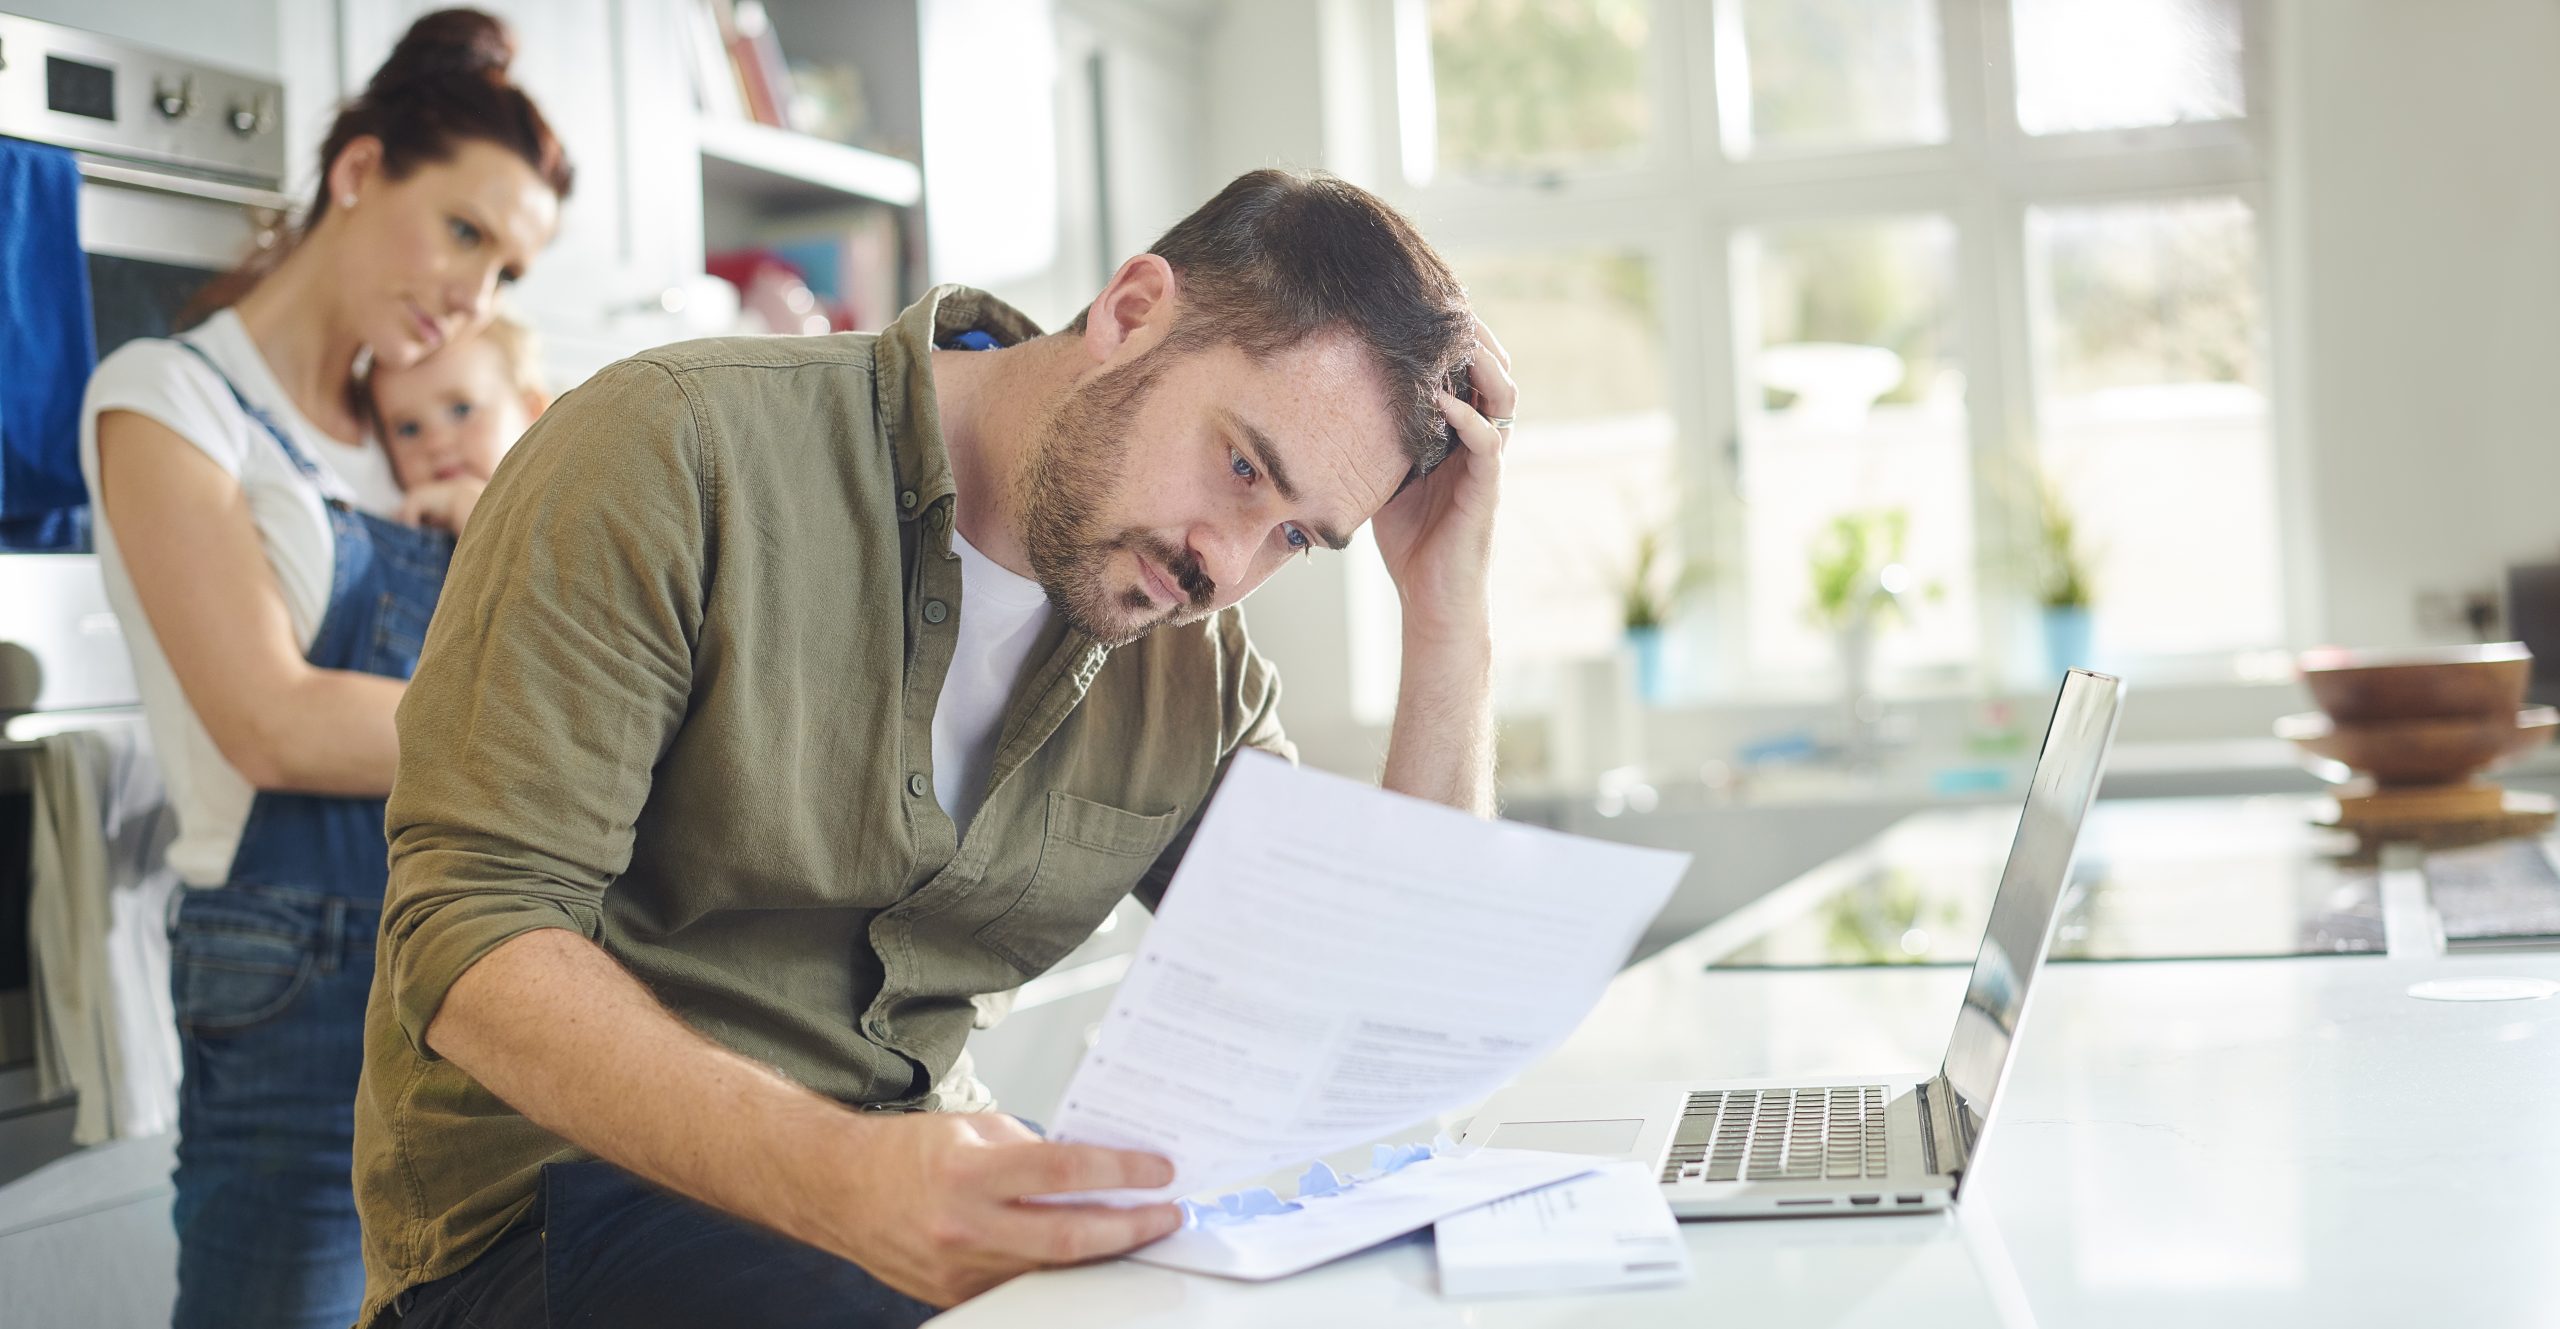 You are currently viewing Finanzieller Stress bei Mitarbeitern: Eine weitverbreitete Herausforderung